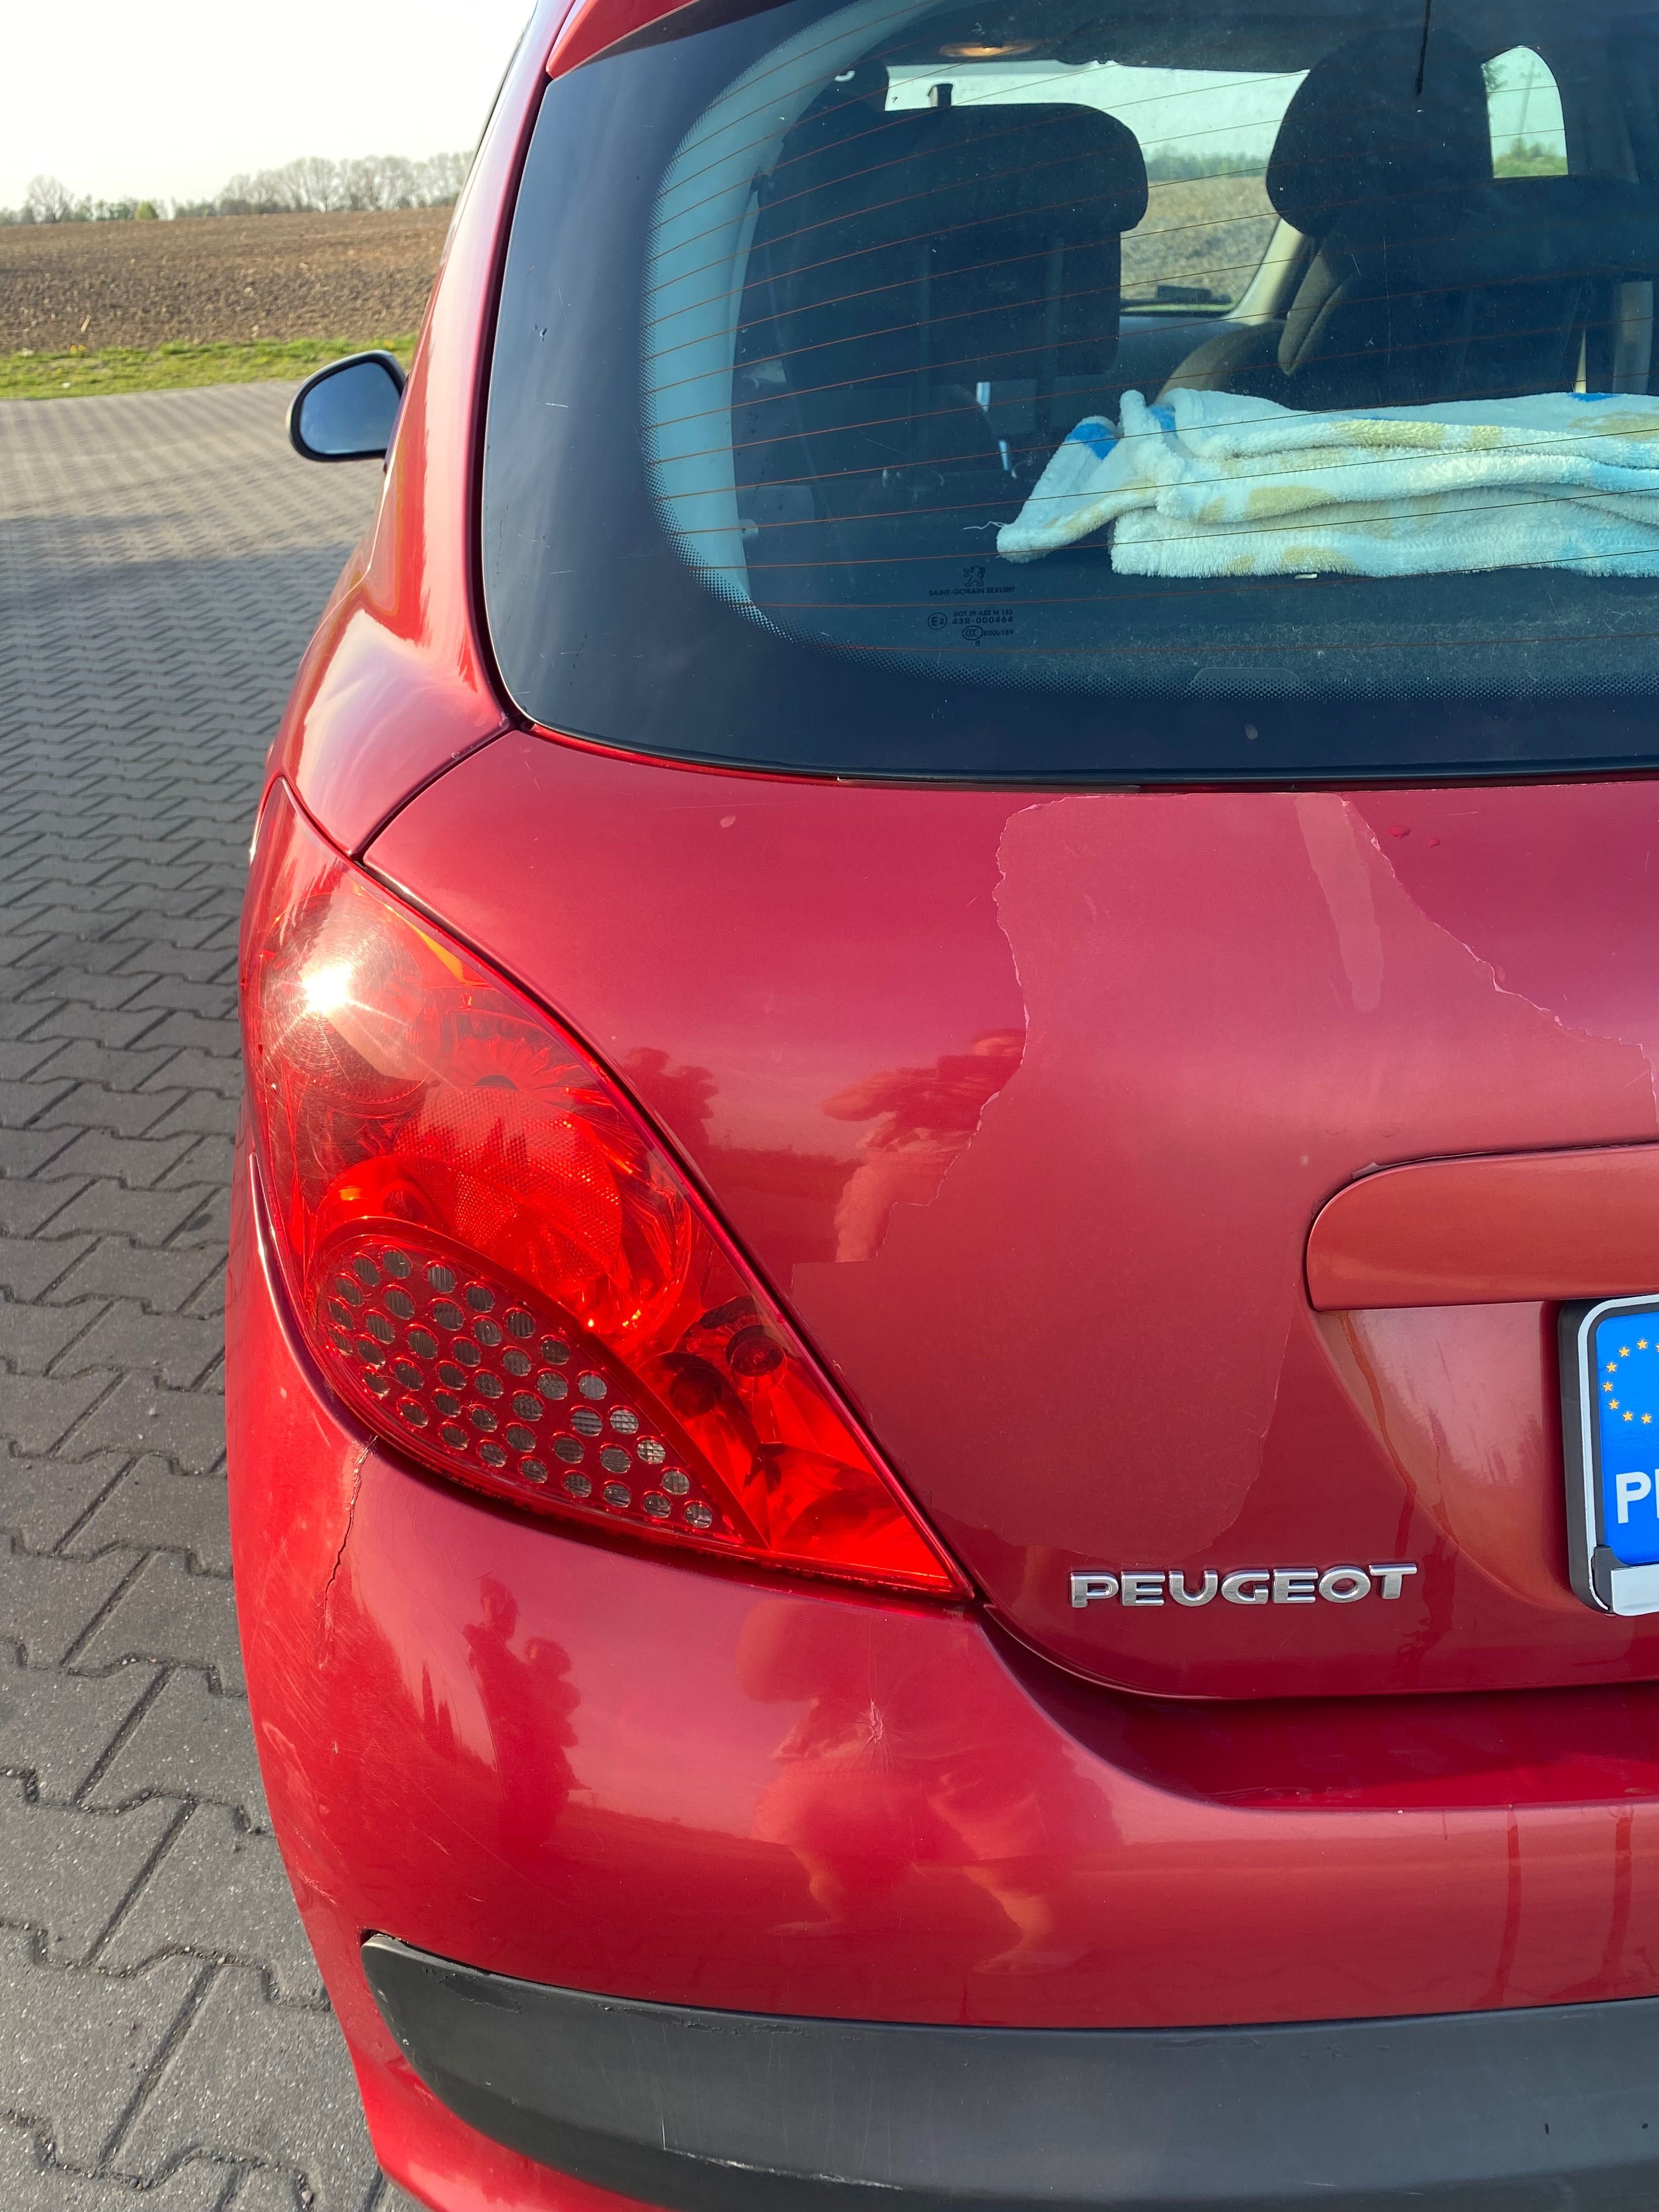 Peugeot 207 z polskiego salonu